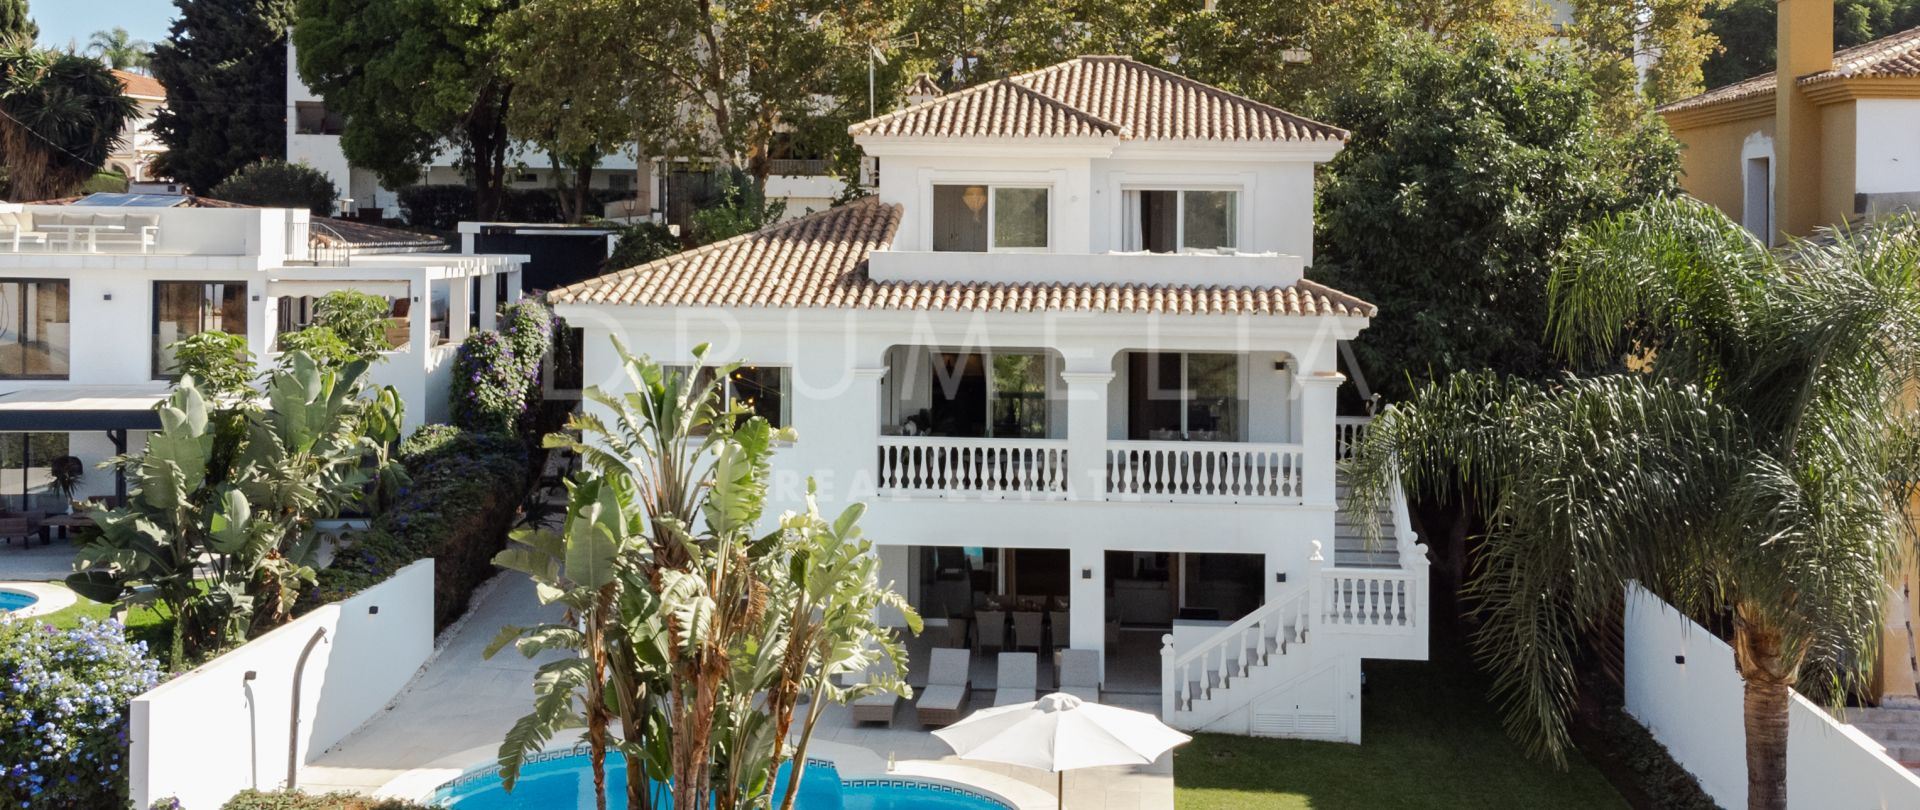 Fantástica villa mediterránea con moderno diseño escandinavo en venta en Nueva Andalucía, Marbella